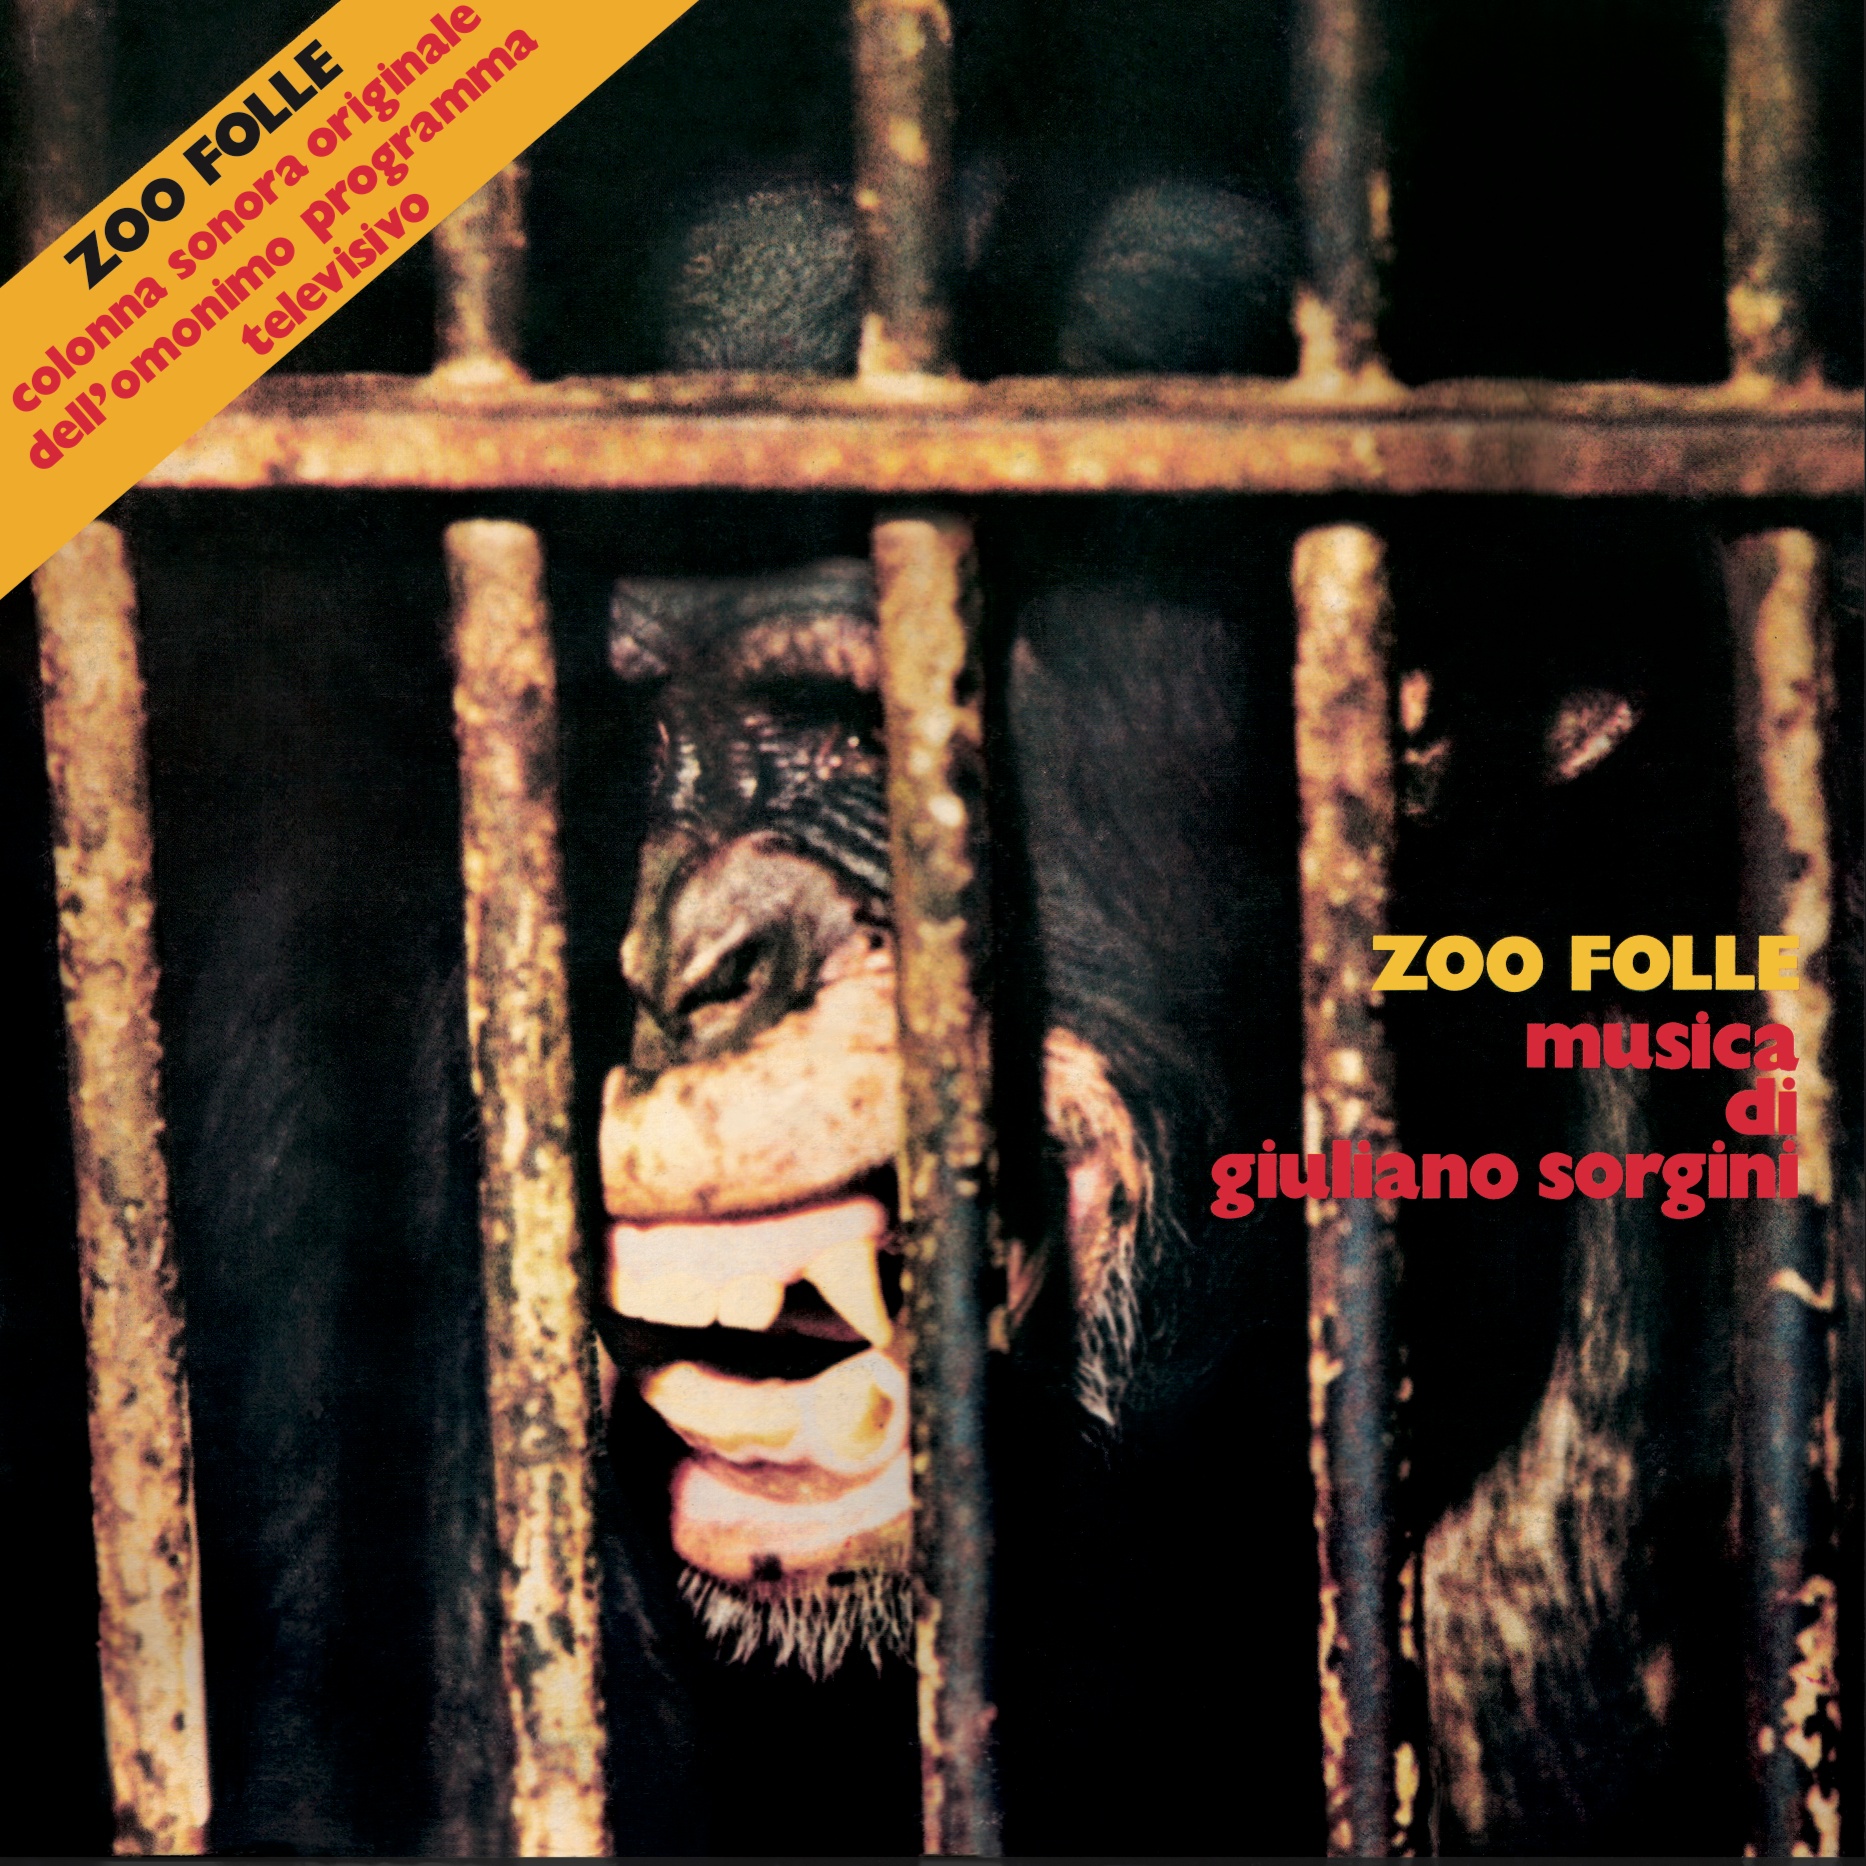 Vinile Giuliano Sorgini - Zoo Folle (Original Soundtrack) (2 Lp) NUOVO SIGILLATO, EDIZIONE DEL 23/09/2022 SUBITO DISPONIBILE